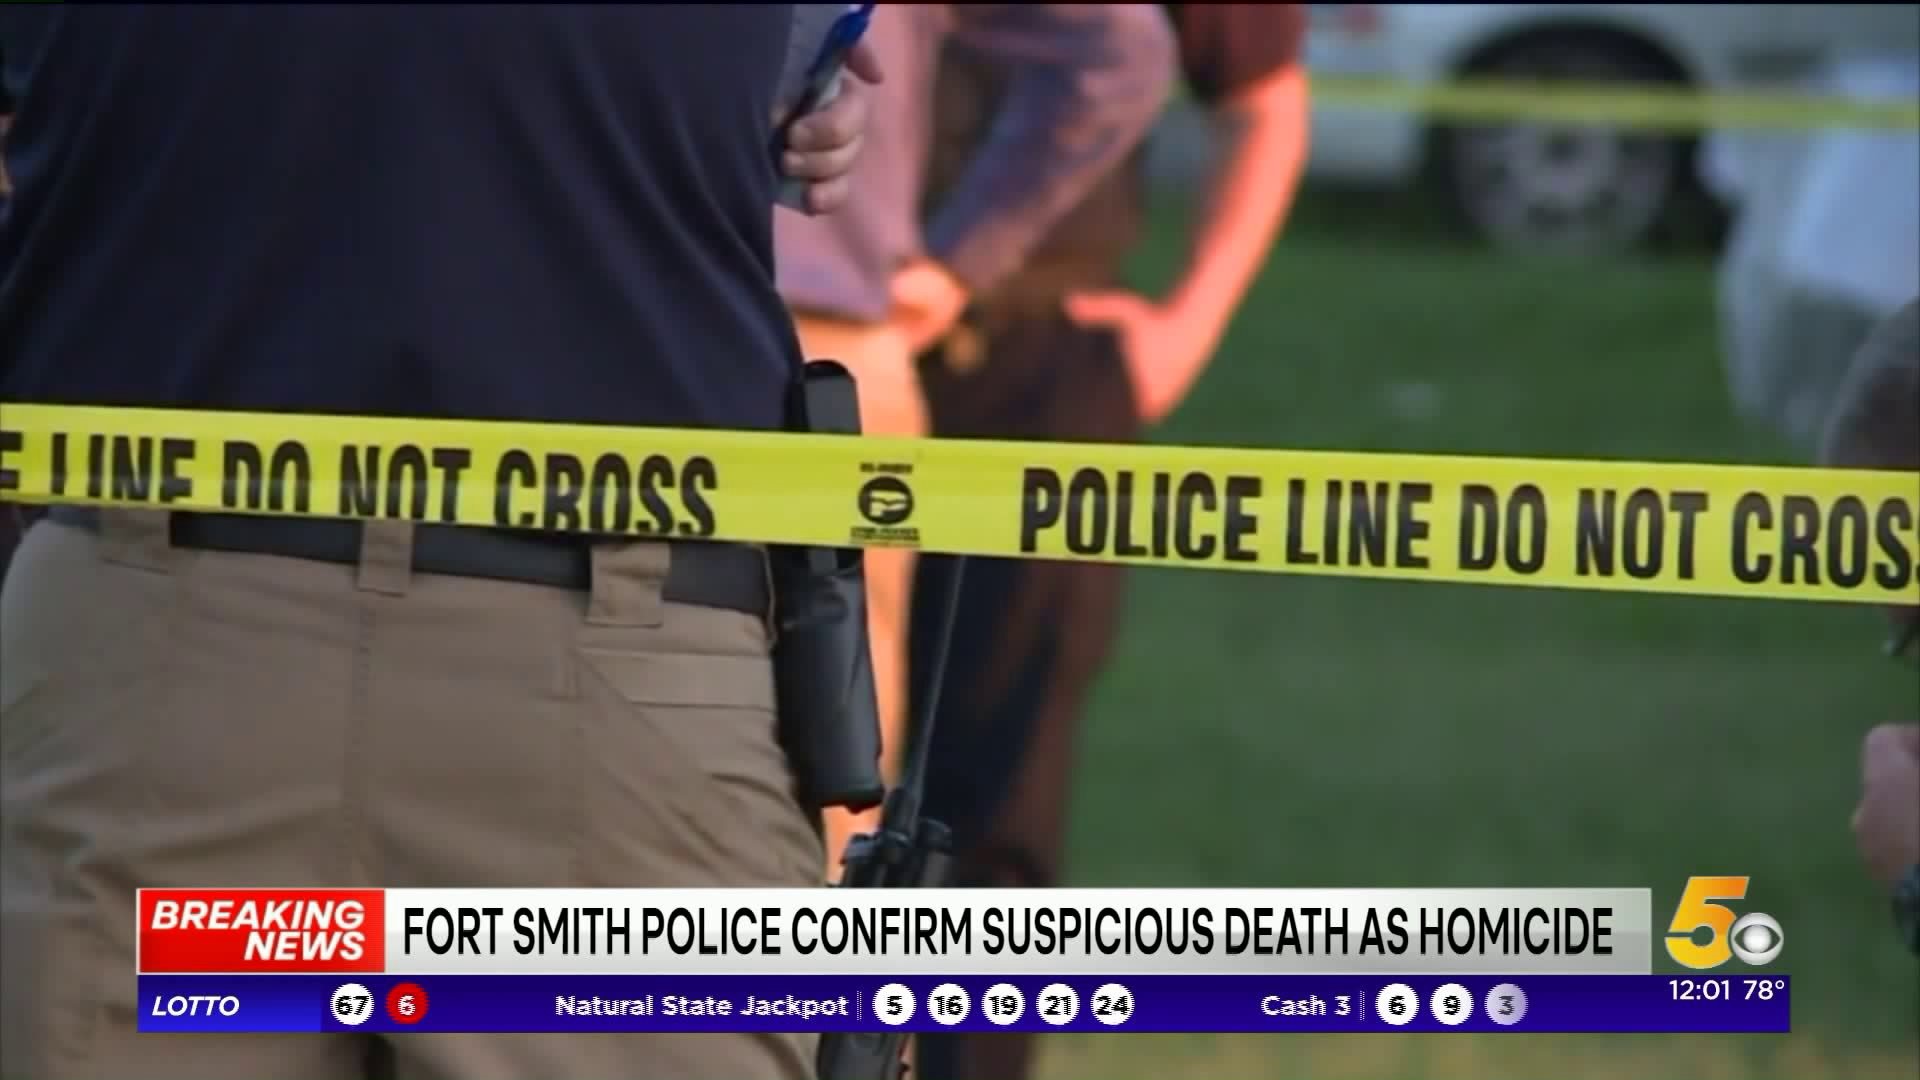 Fort Smith Police Confirm Suspicious Death as Homicide